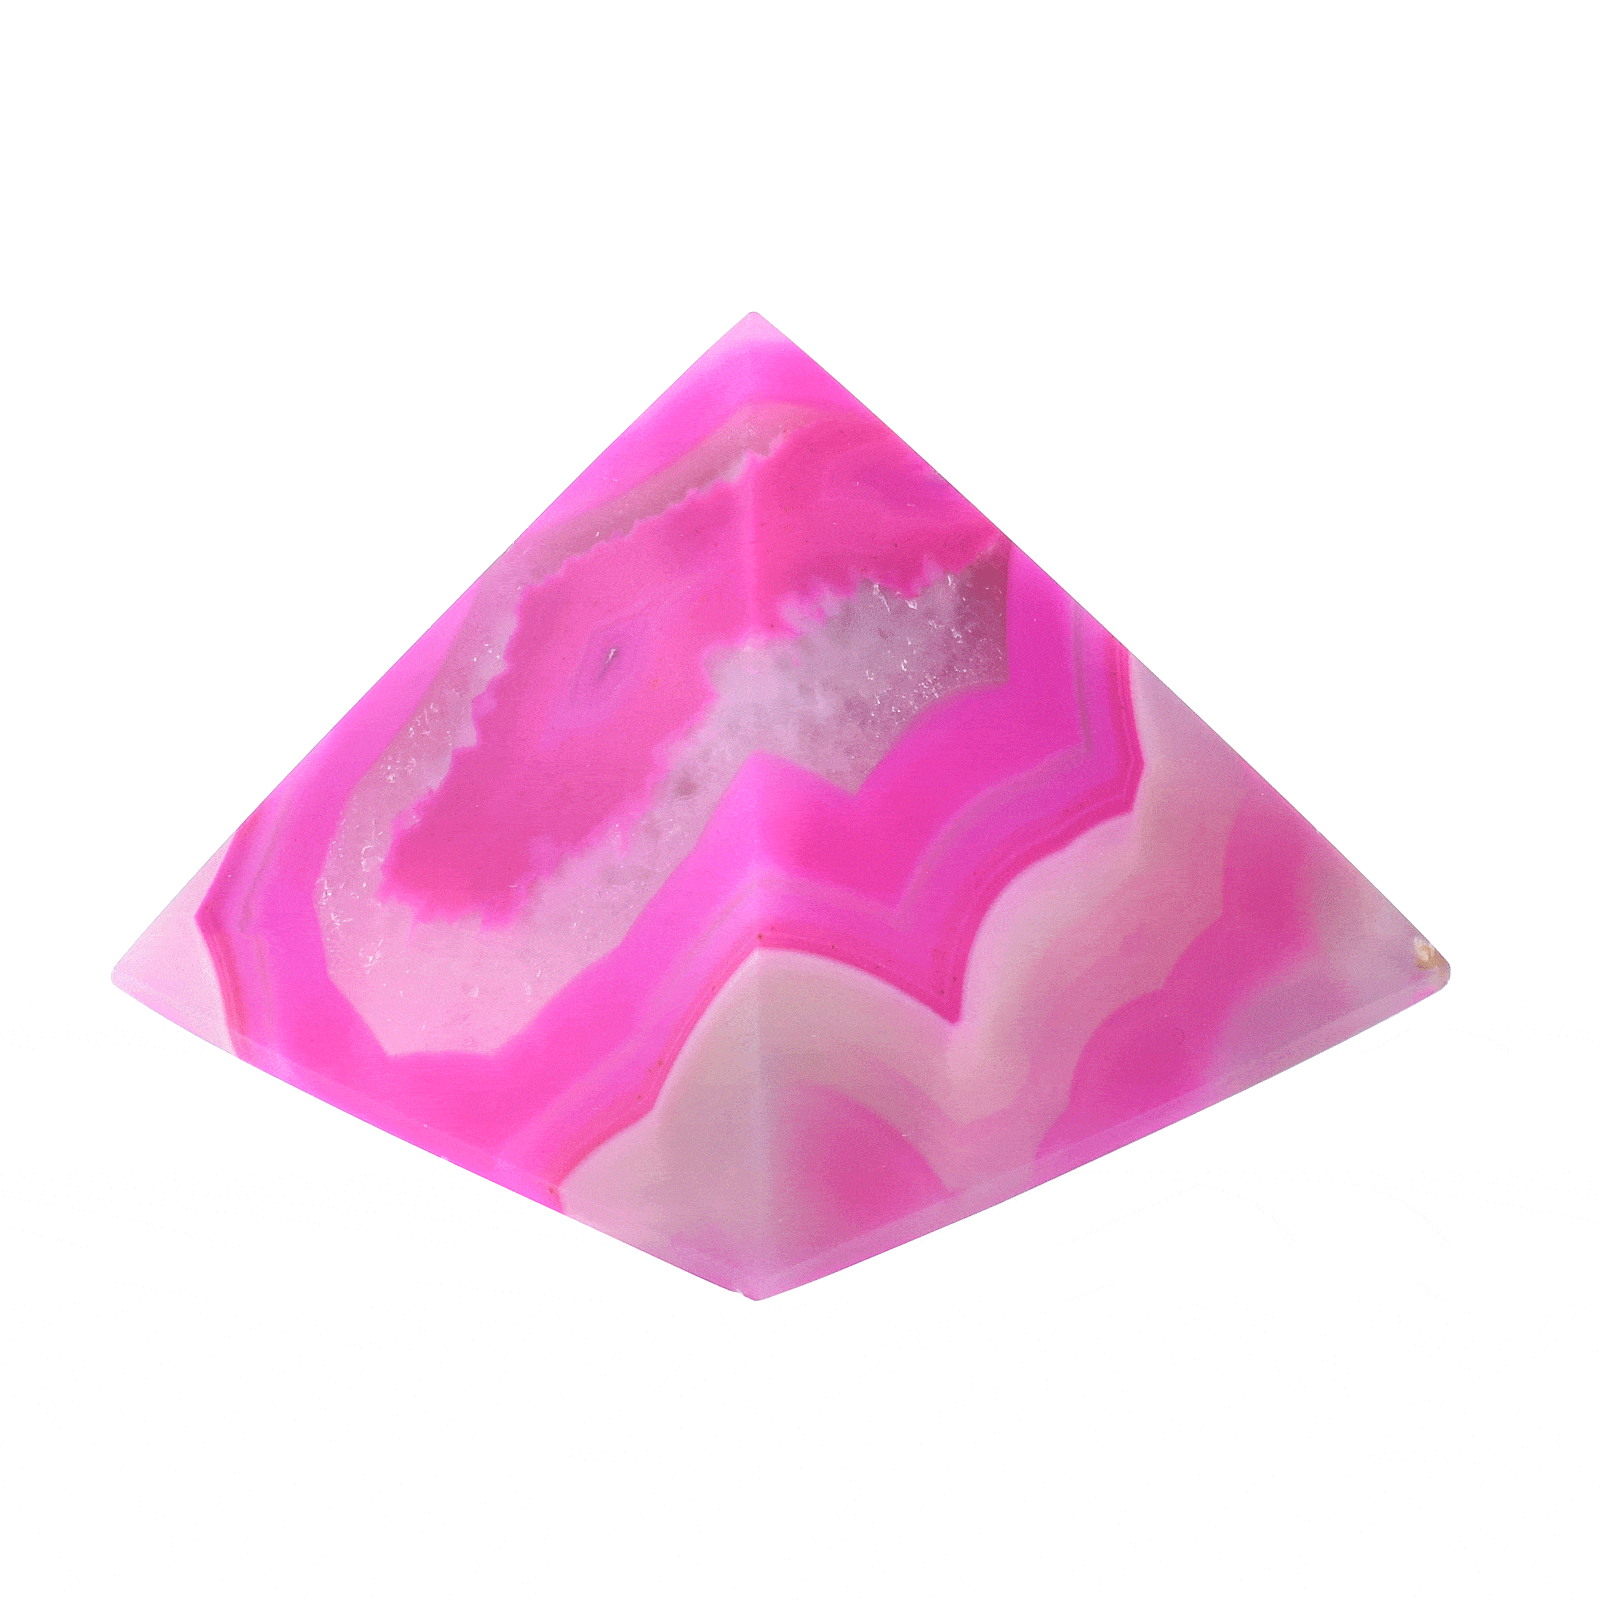 Πυραμίδα από φυσική πέτρα Αχάτη ροζ χρώματος, ύψους 3,5cm. Αγοράστε online shop.